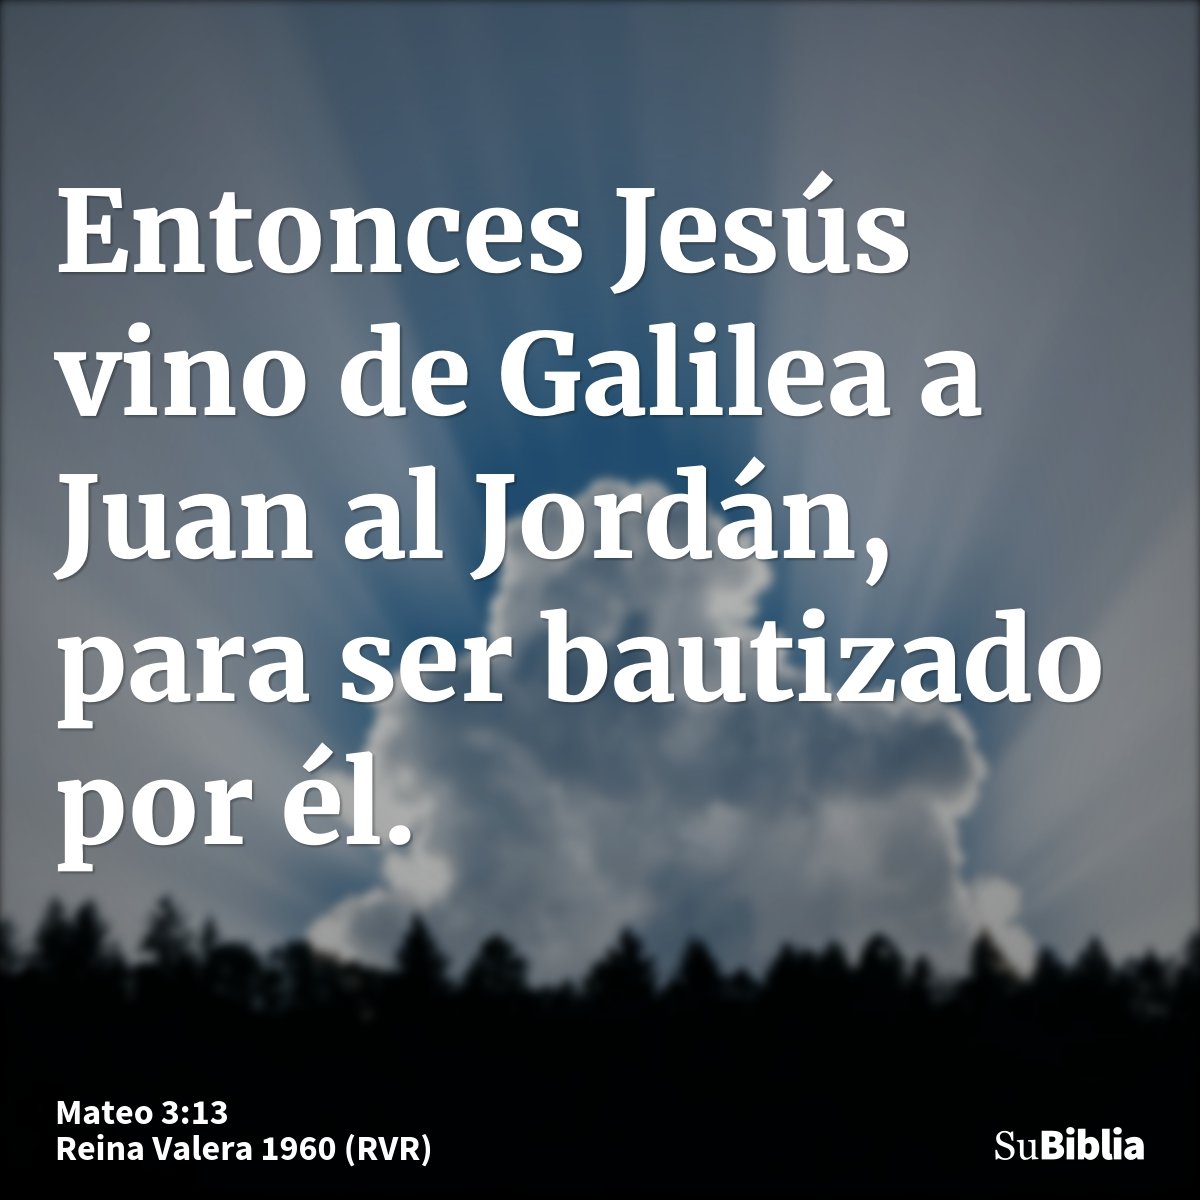 Entonces Jesús vino de Galilea a Juan al Jordán, para ser bautizado por él.